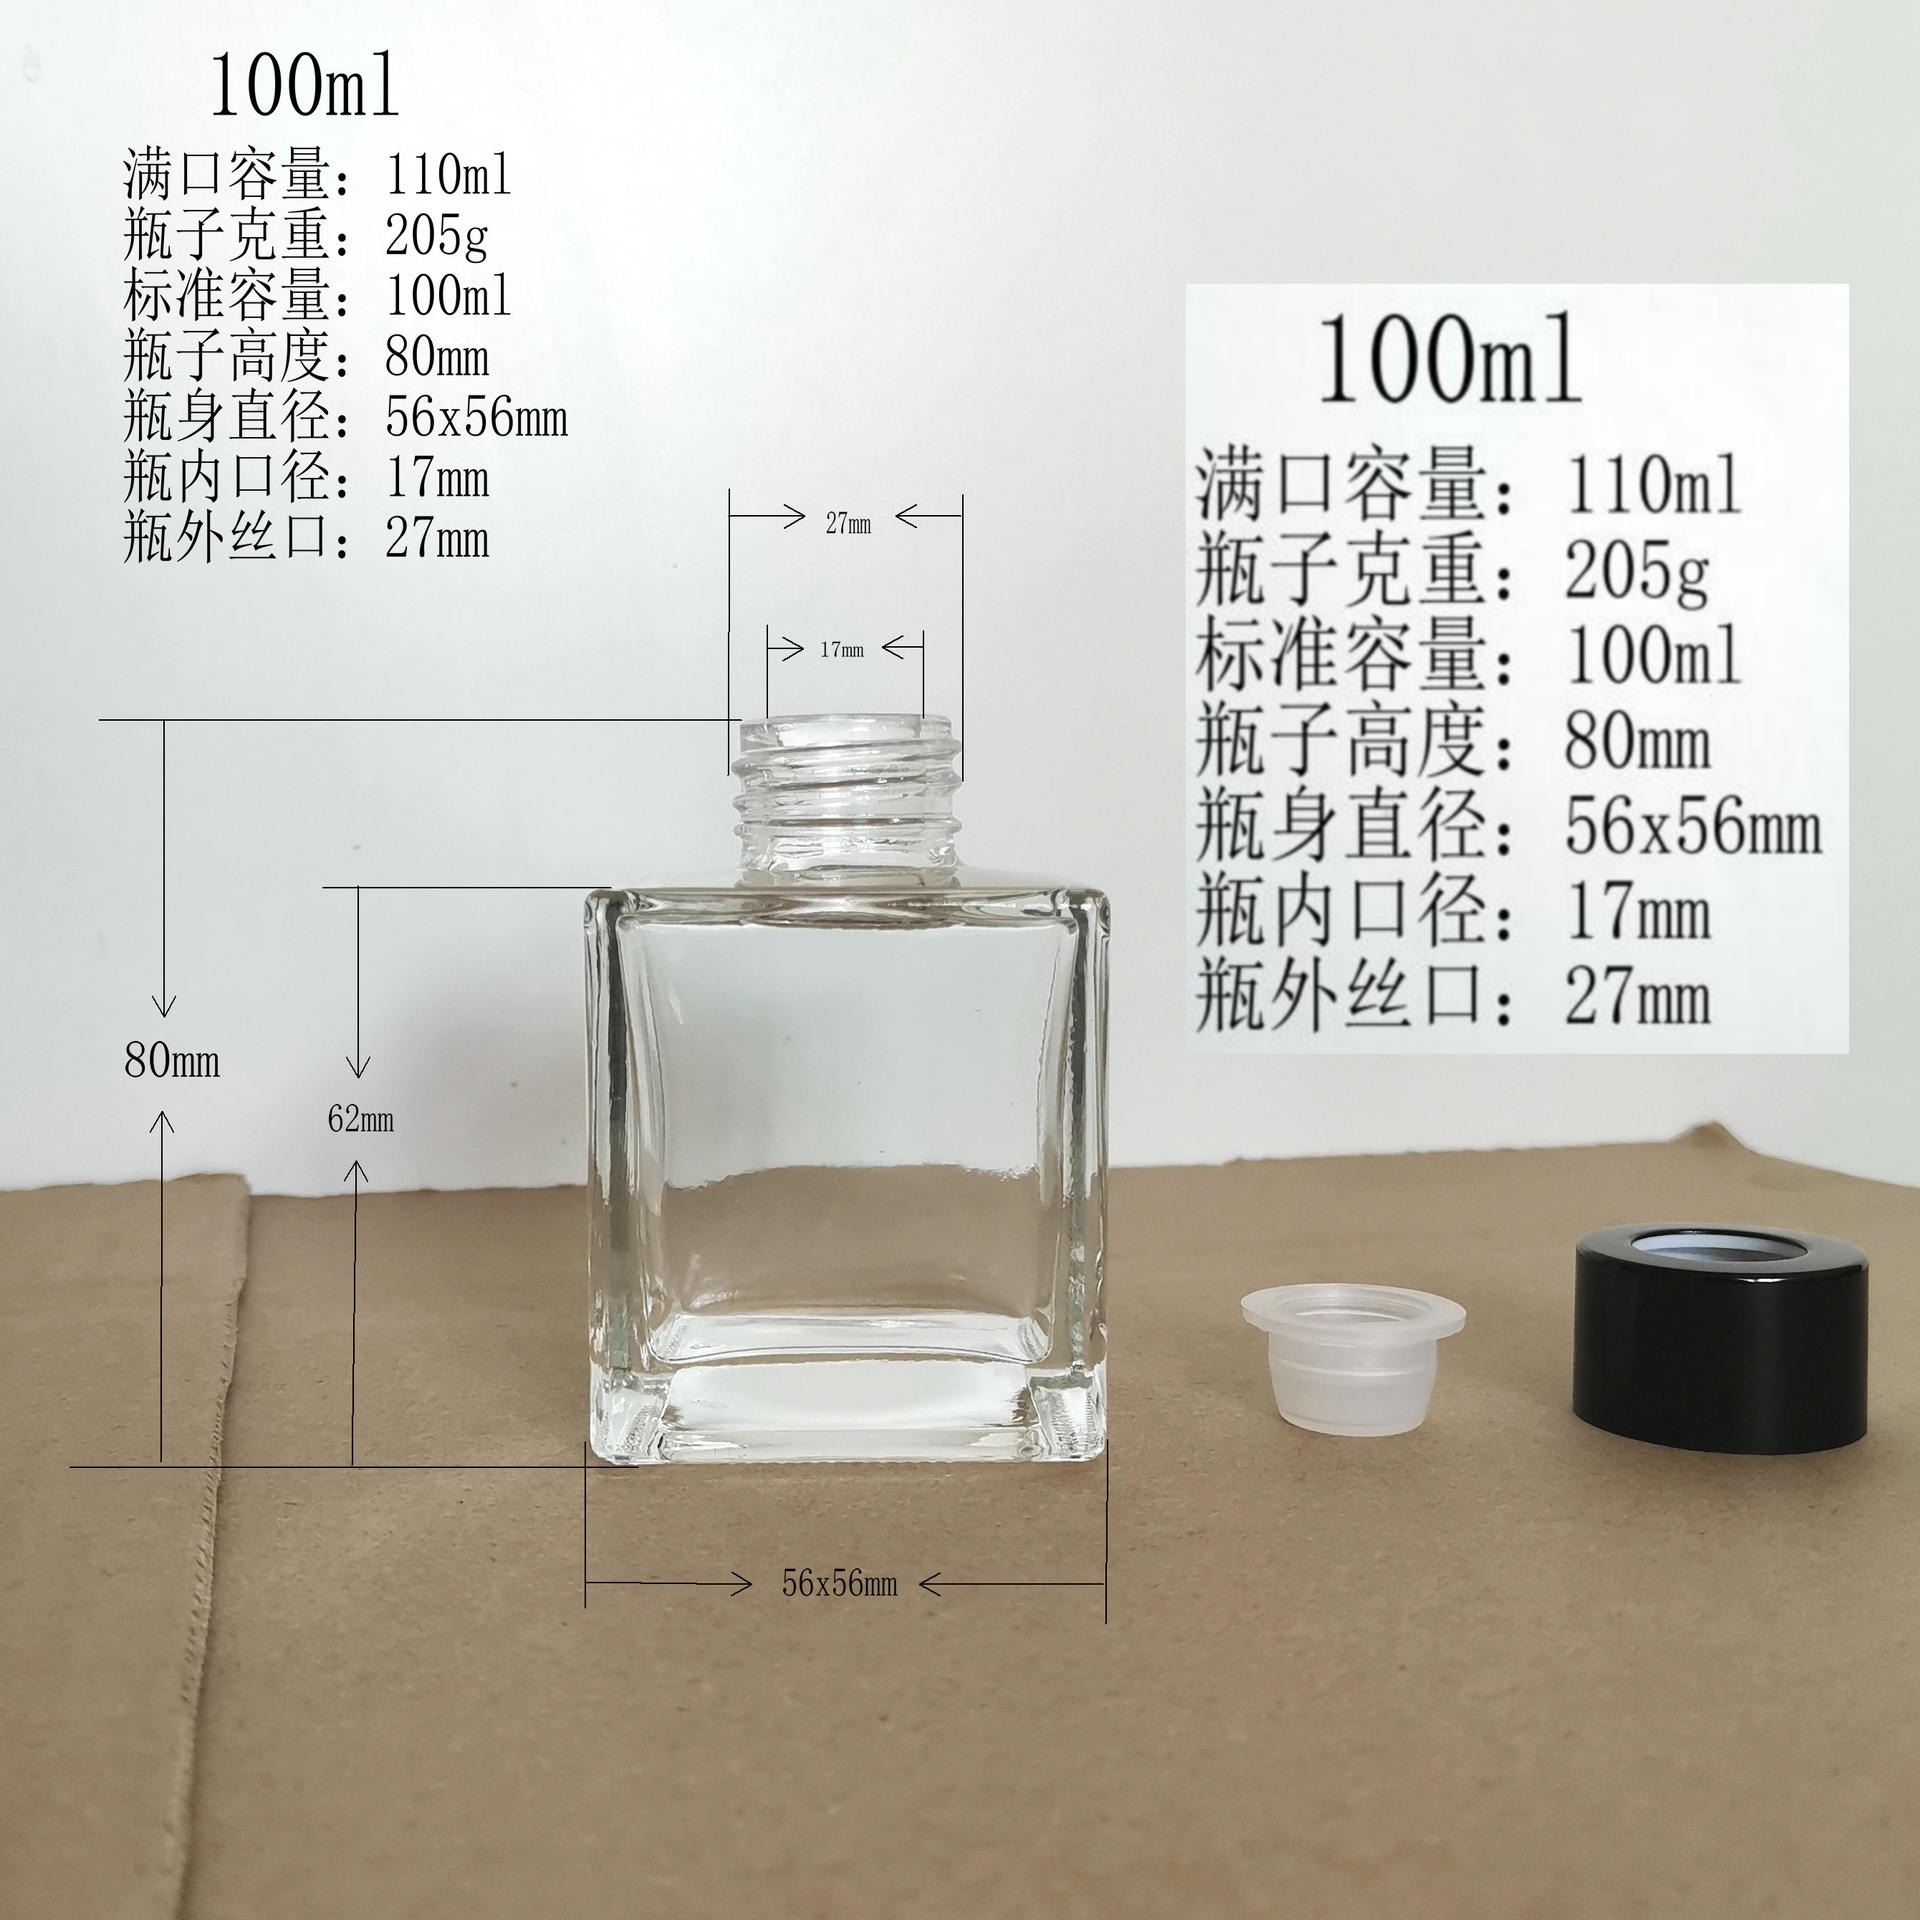 香薰玻璃瓶 镂孔玻璃瓶香精瓶生产厂家徐州隆安公司图片